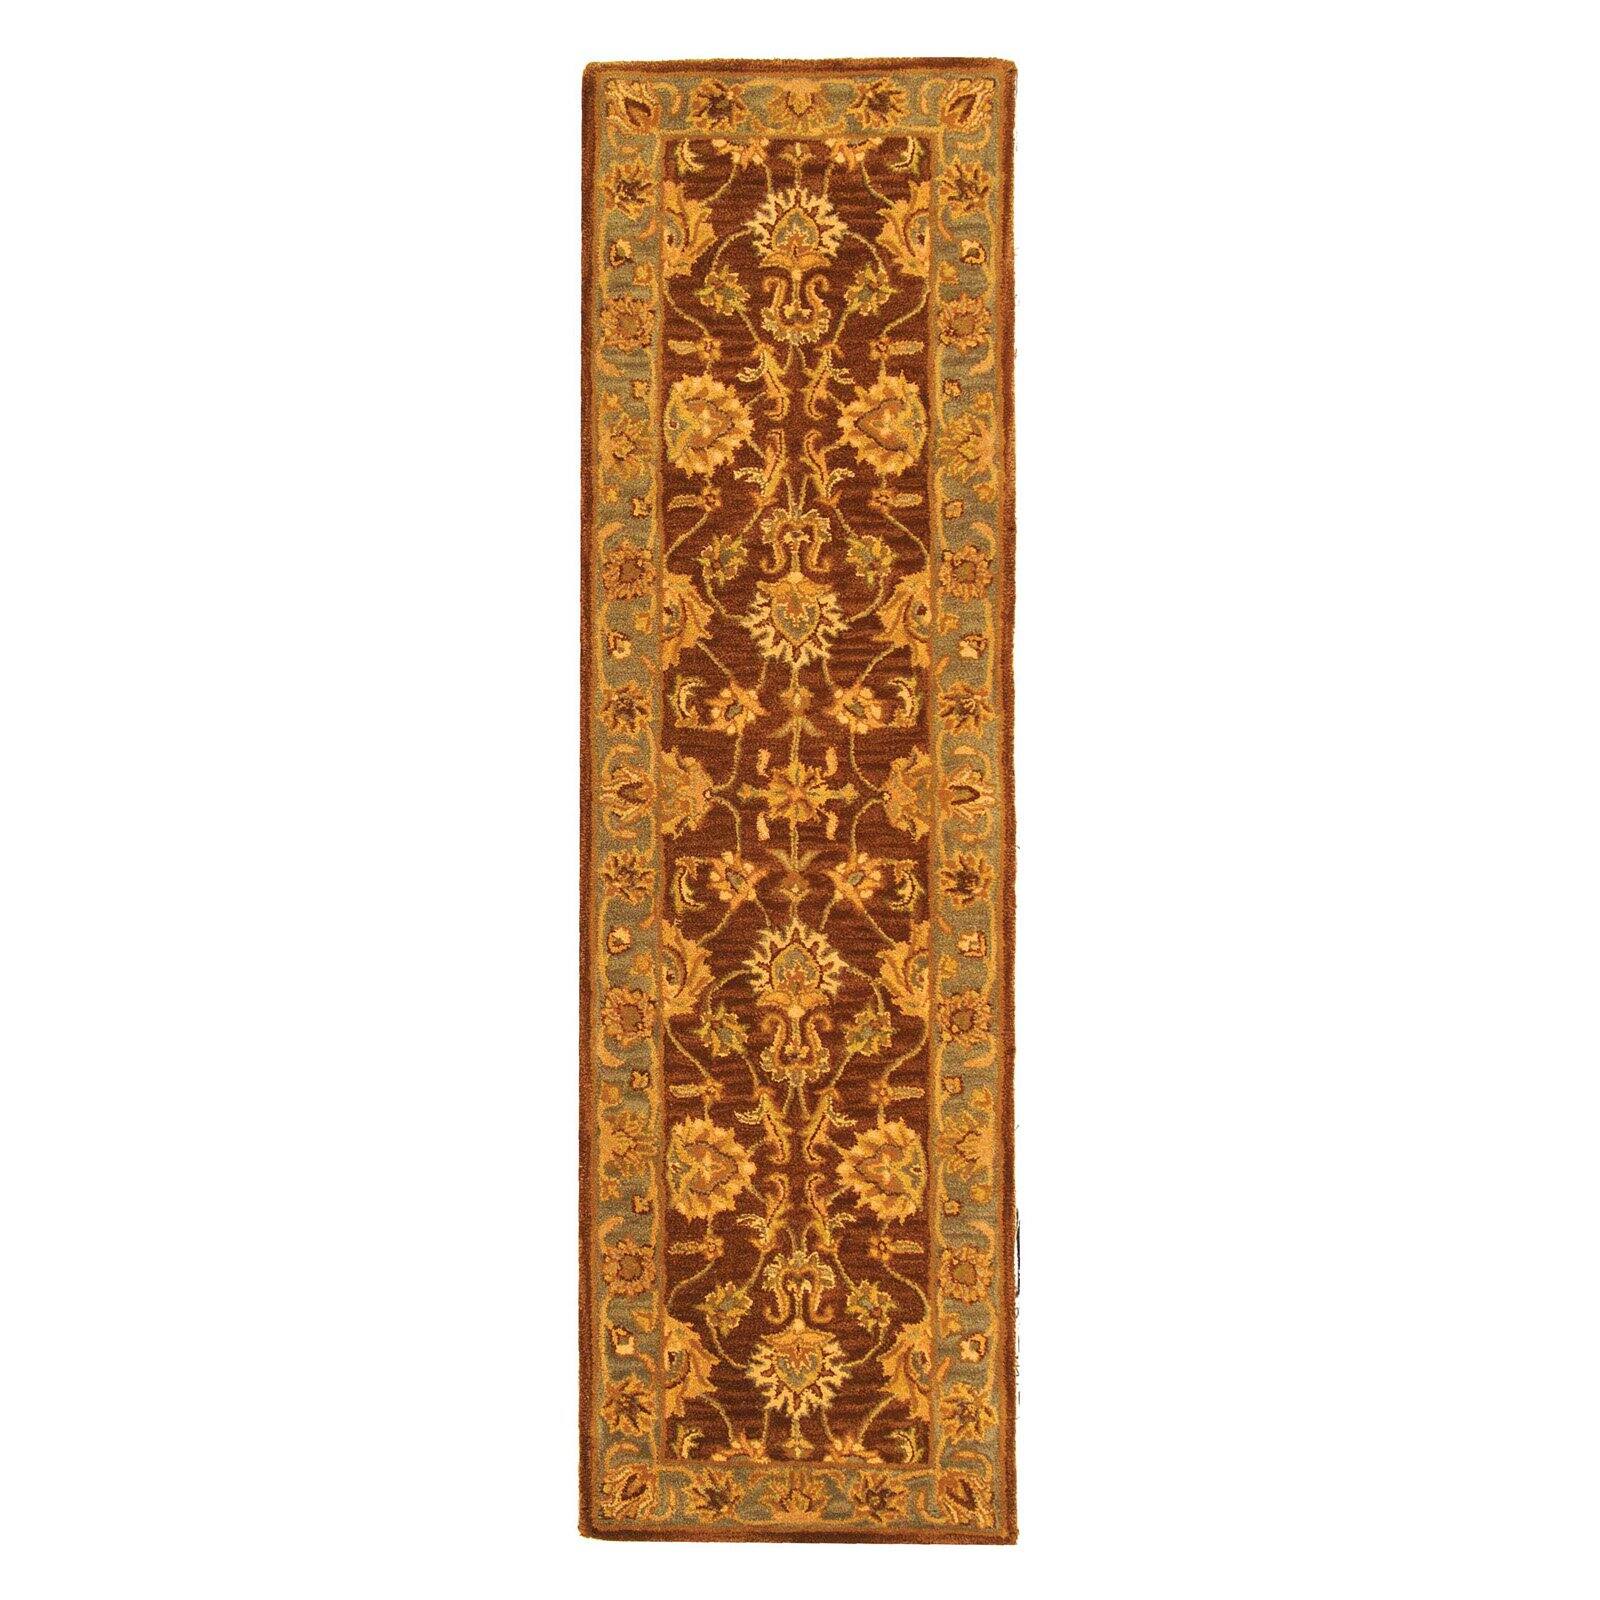 SAFAVIEH Heritage Regis Traditional Wool Area Rug, Brown/Blue, 4' x 6' - image 3 of 9